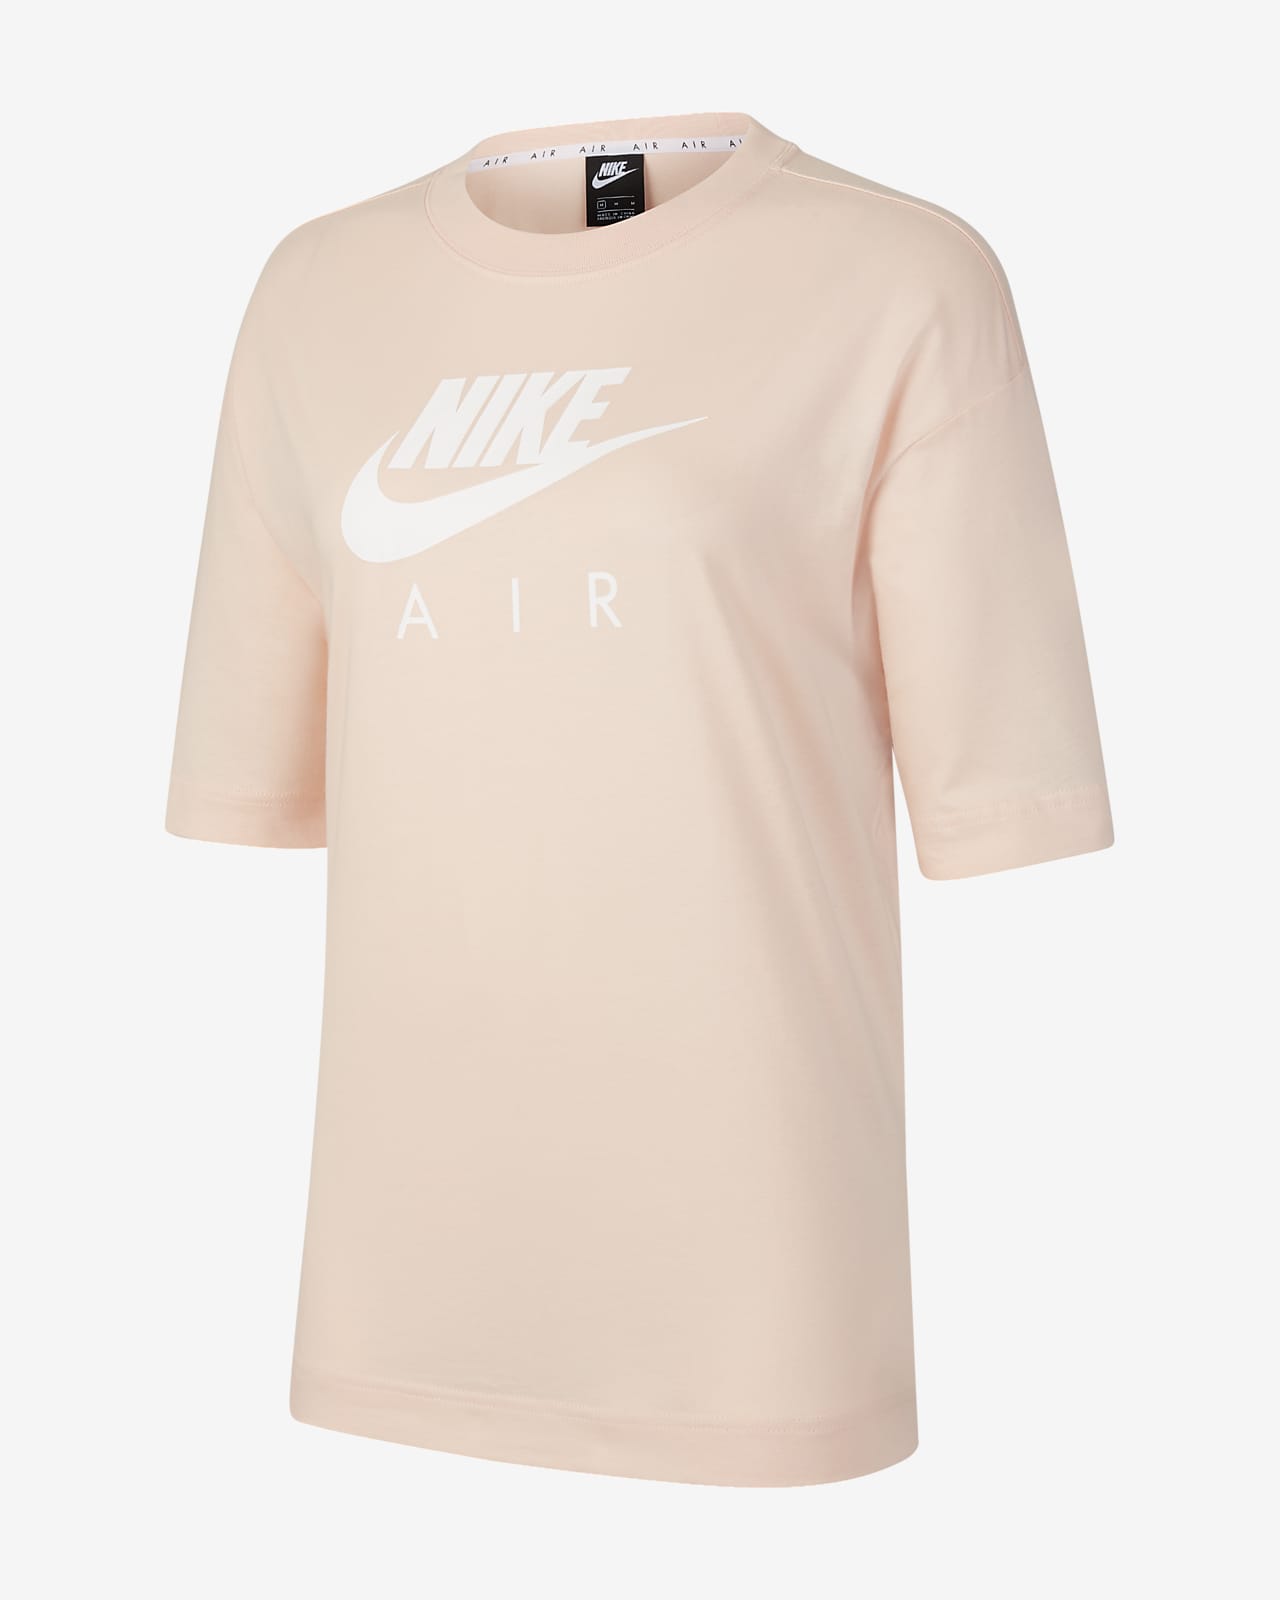 Nike Air 女子短袖上衣